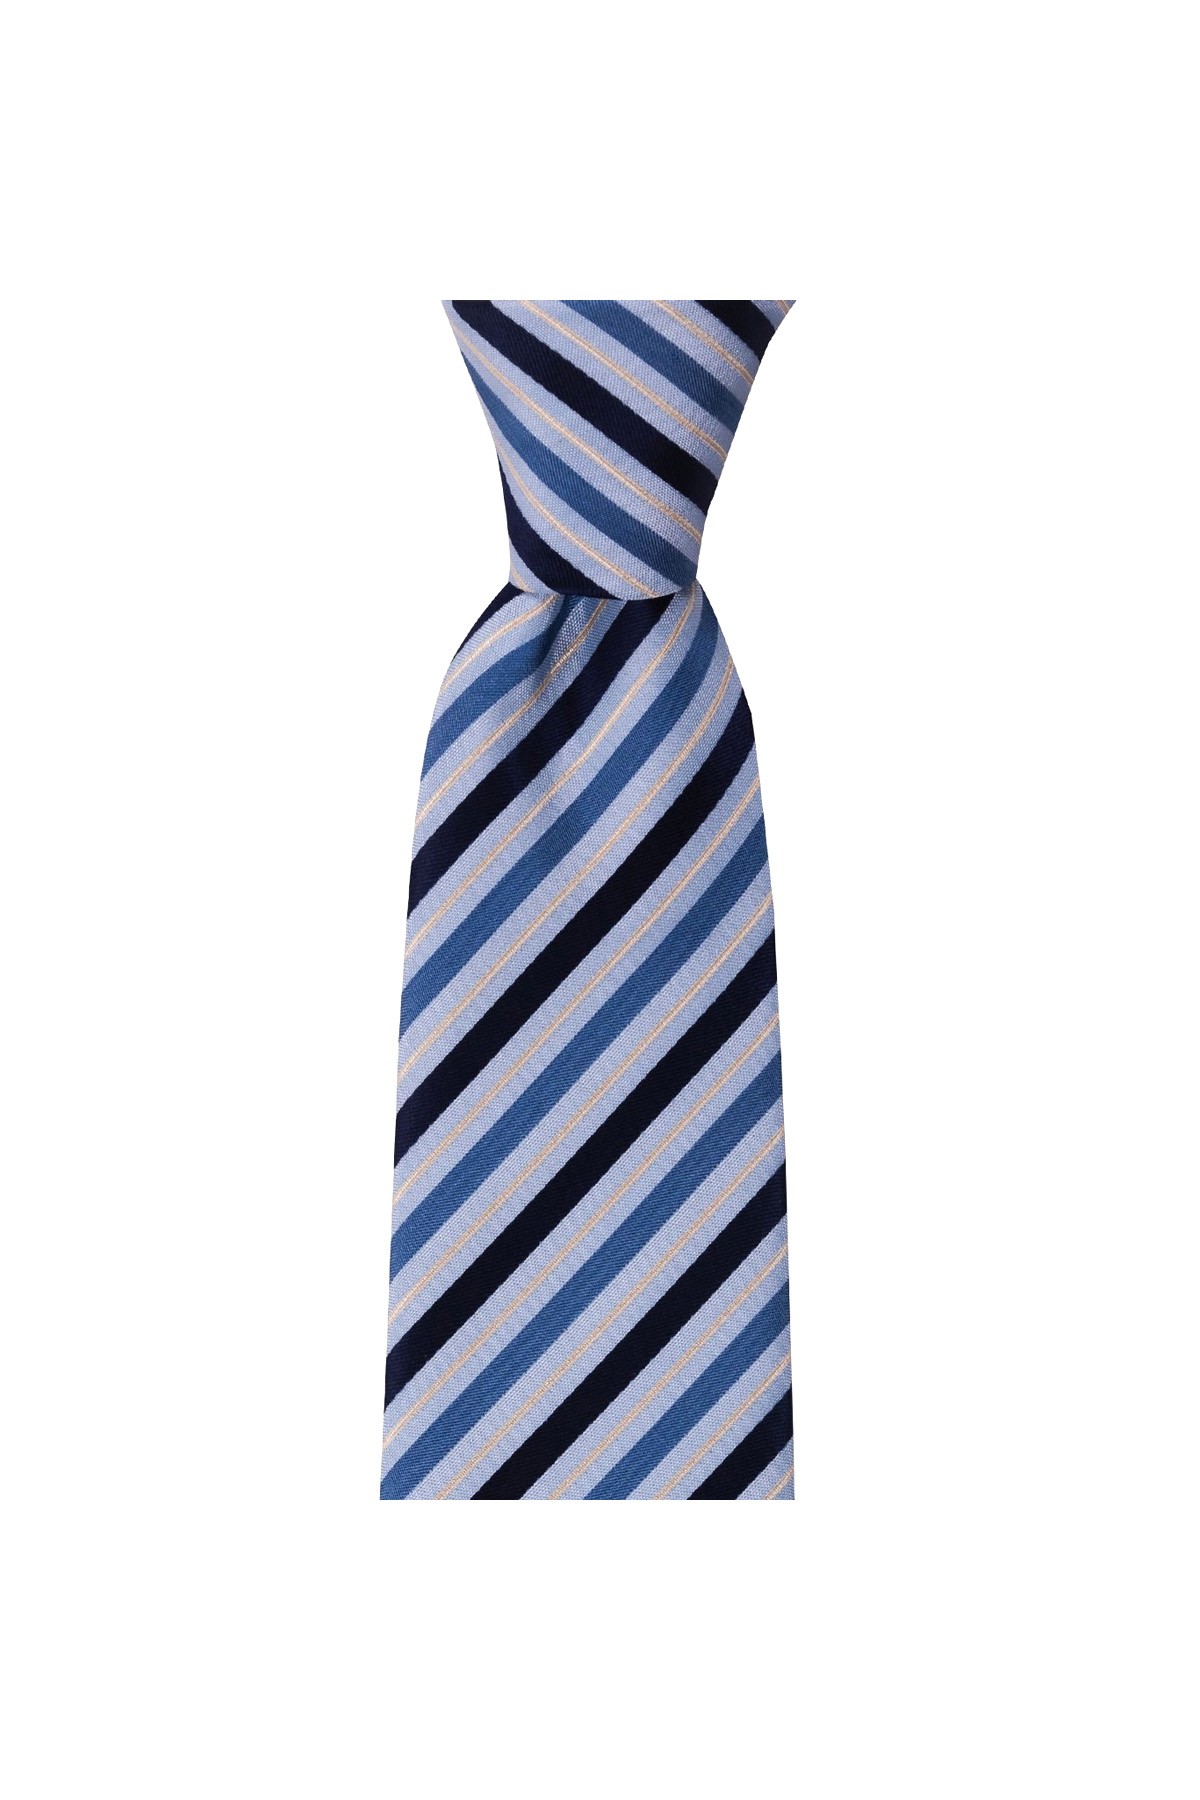 İnce çizgili 8 cm genişliğinde klasik kravat